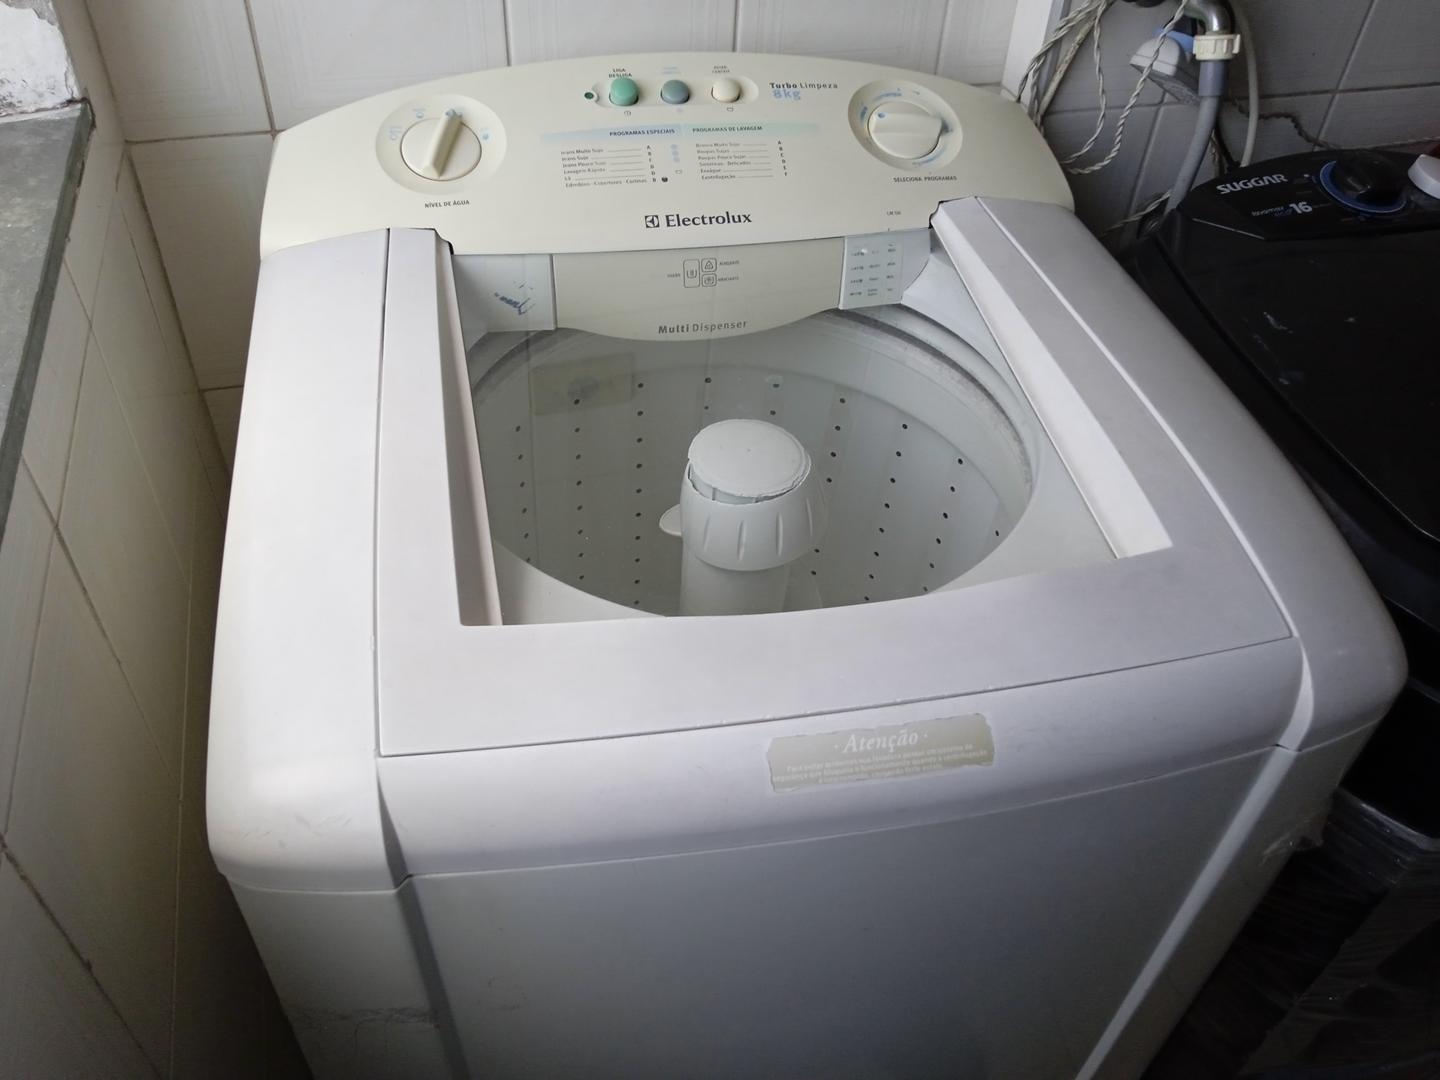 Máquina de lavar roupas Electrolux LM08 em Plástico Branco 94 cm x 68 cm x 70 cm